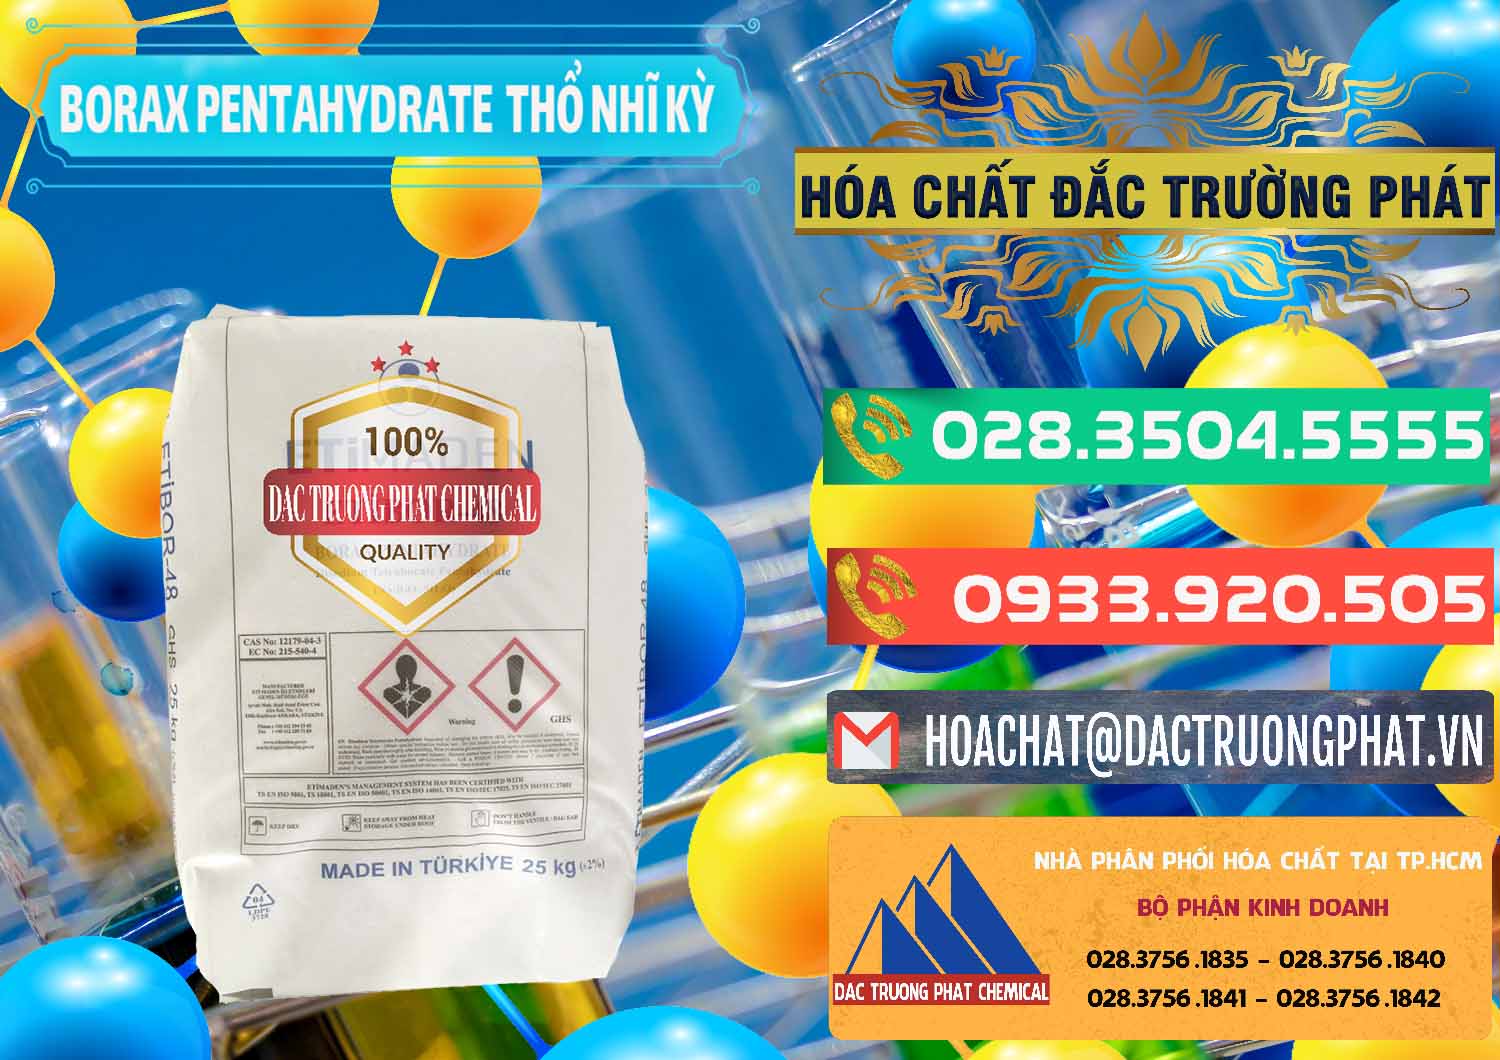 Cty chuyên cung ứng ( bán ) Borax Pentahydrate Thổ Nhĩ Kỳ Turkey - 0431 - Cty kinh doanh - phân phối hóa chất tại TP.HCM - congtyhoachat.com.vn